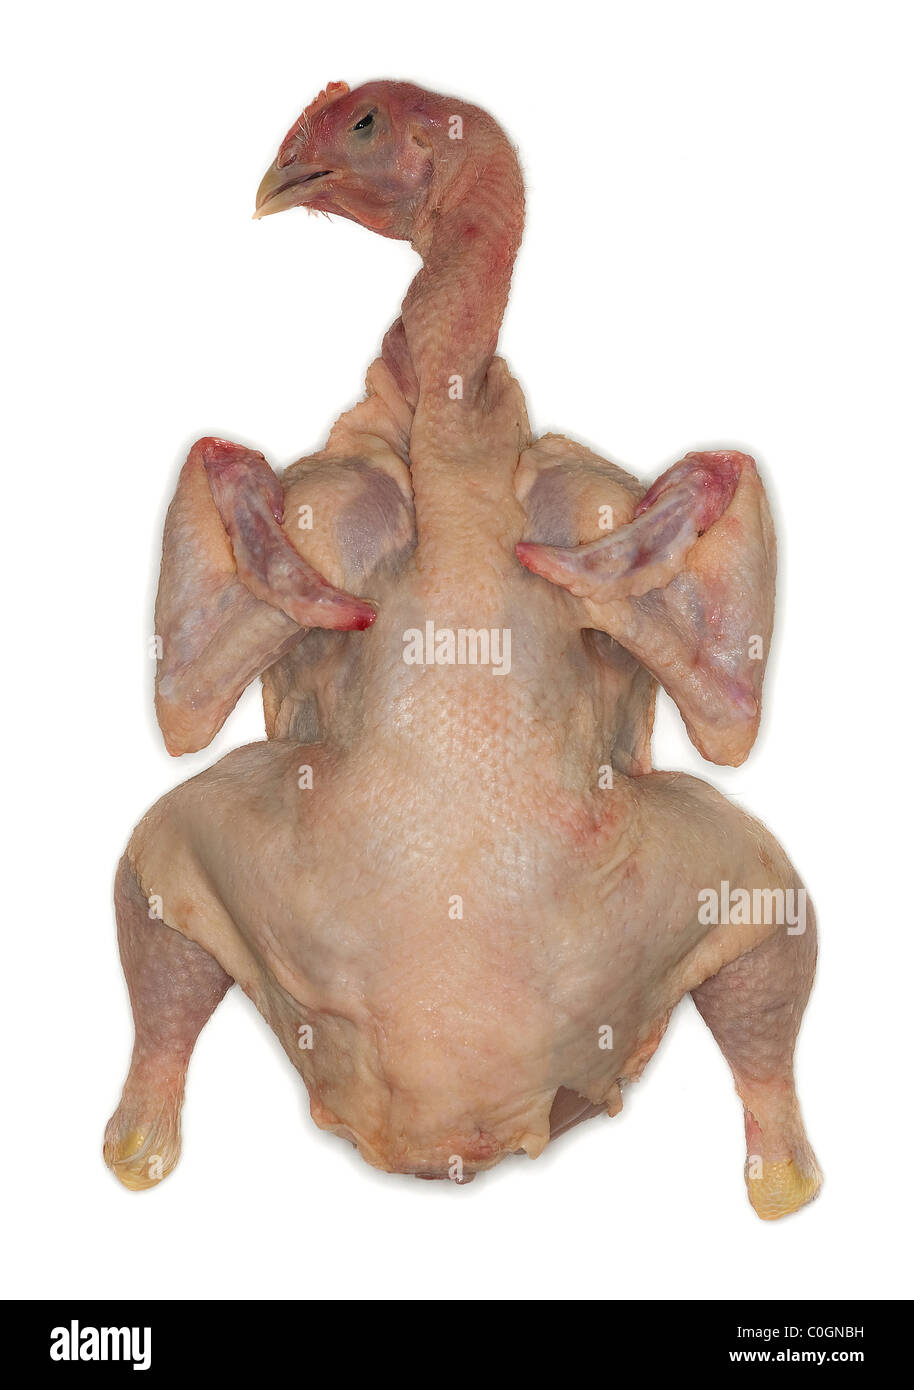 Testa di un morto e pollo spennate pronte per essere cucinate intaglio Foto Stock